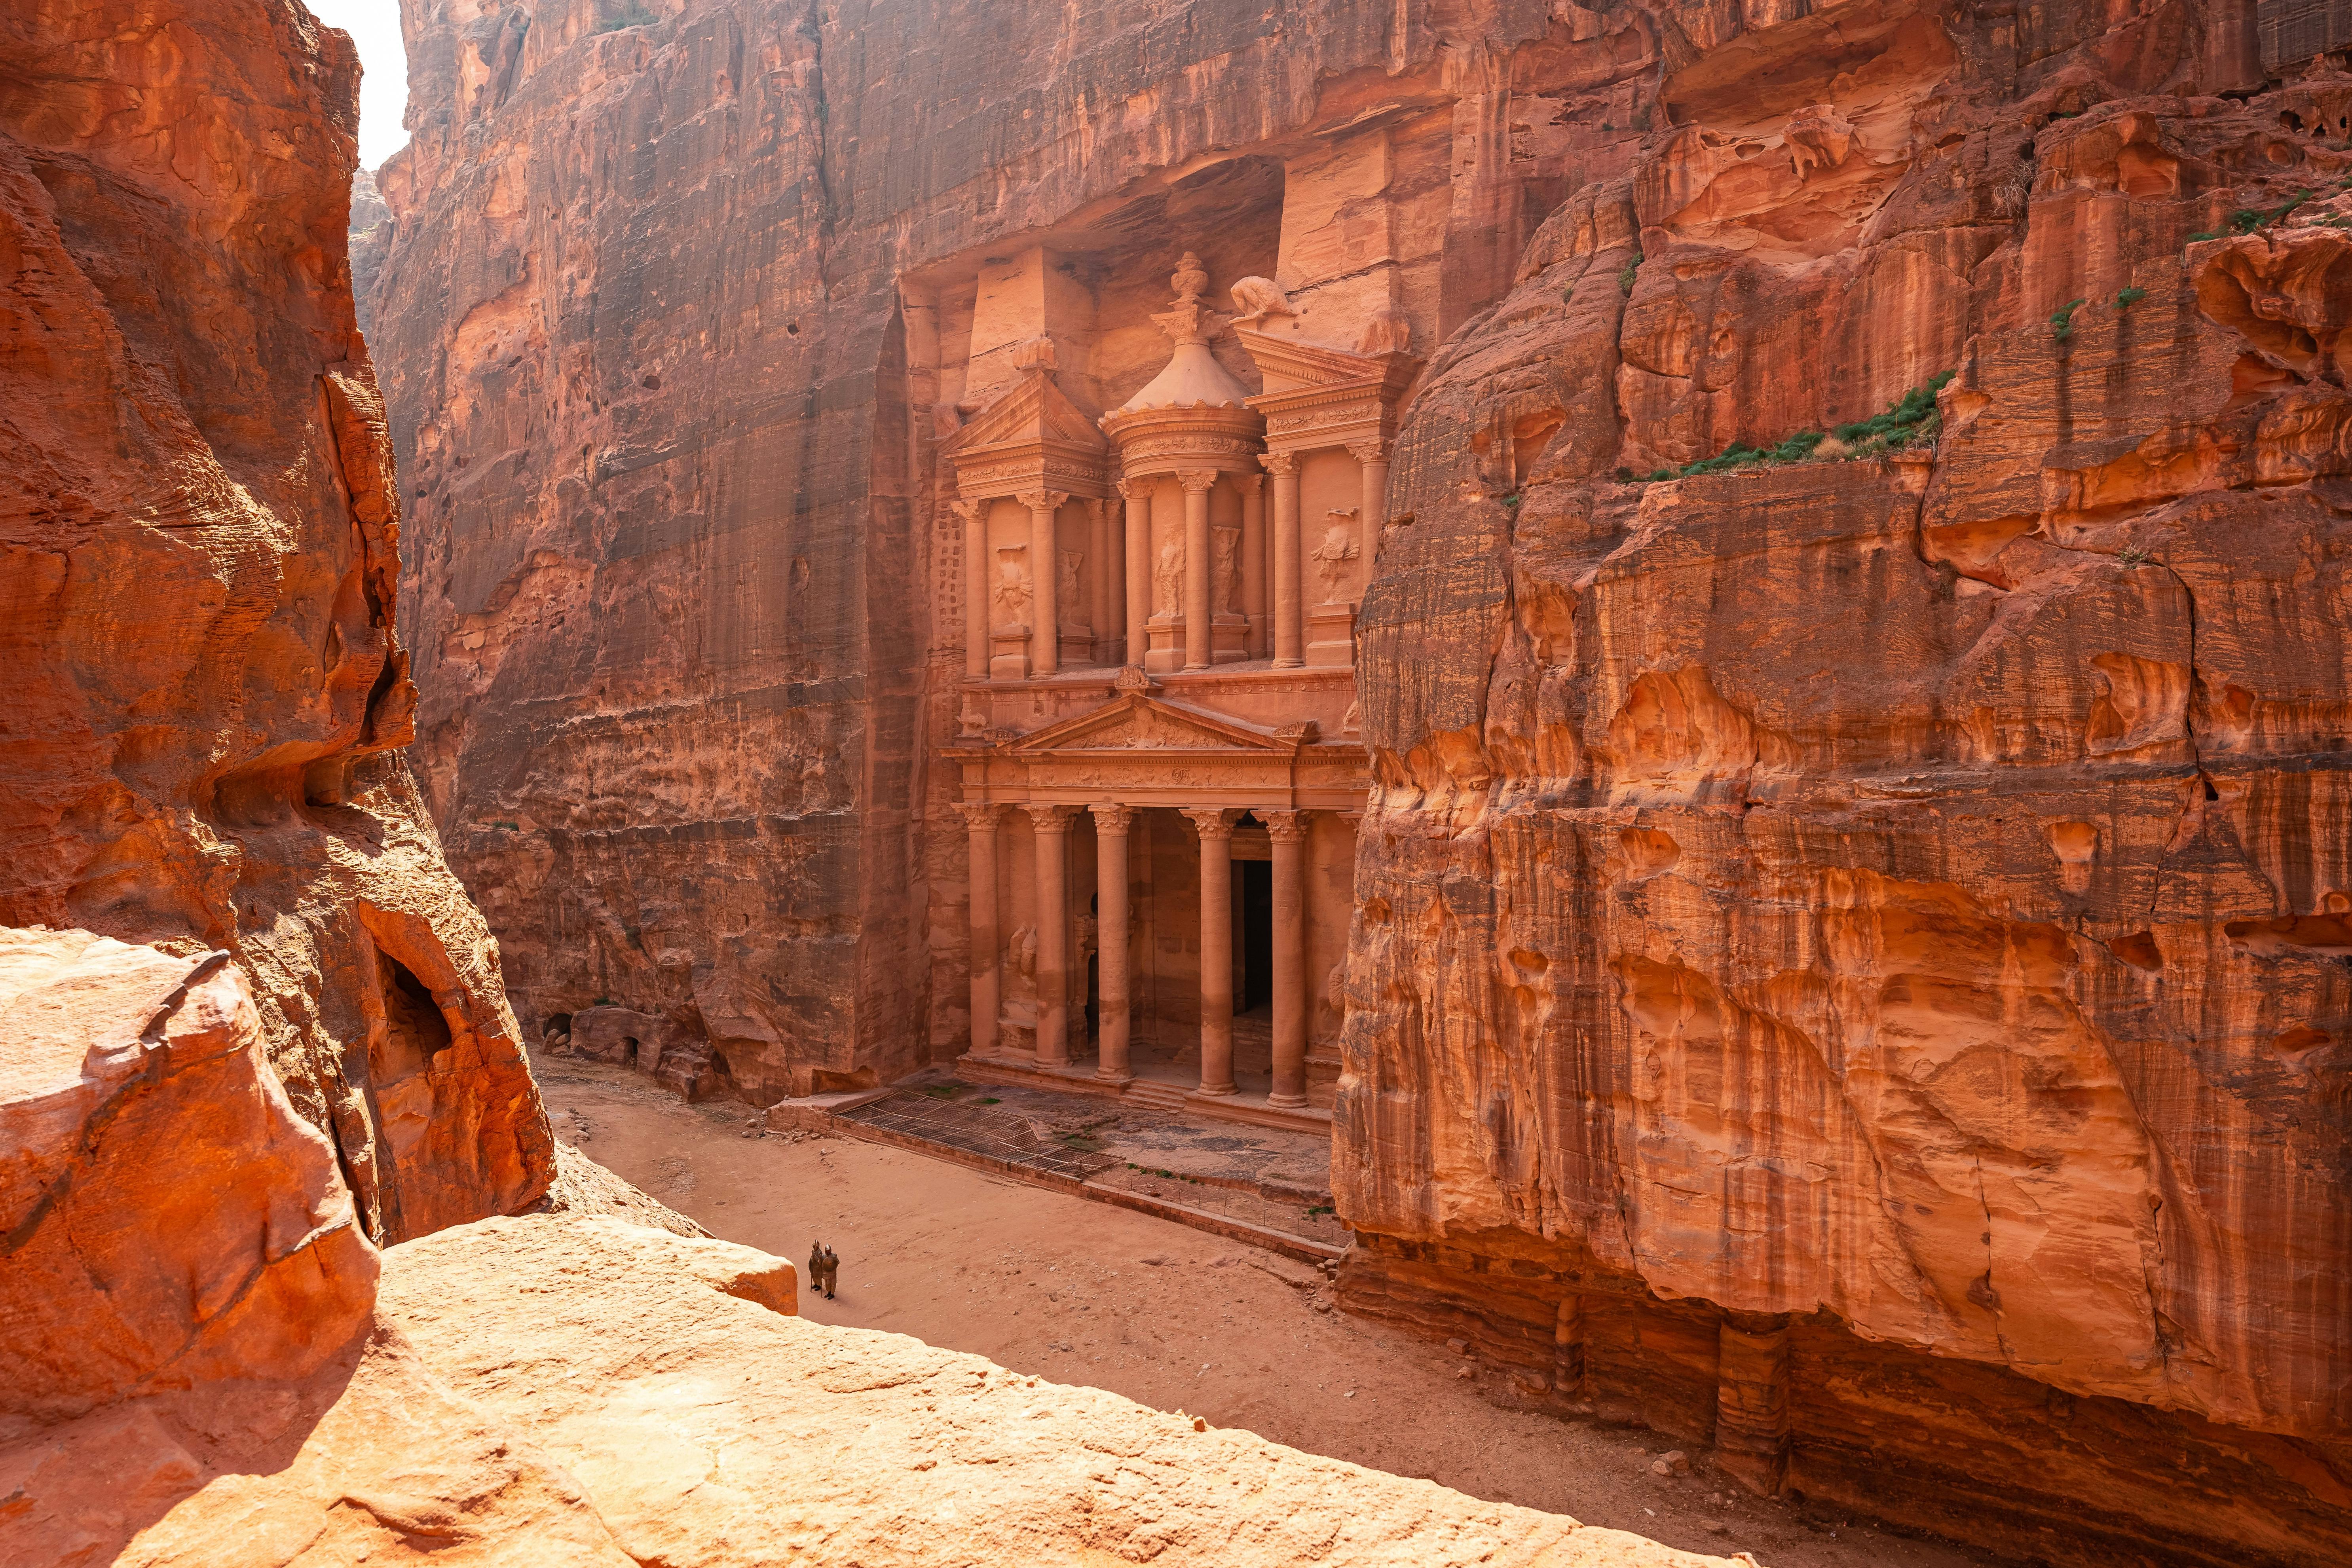 Viagem diurna privada a Petra, incluindo Little Petra do Mar Morto